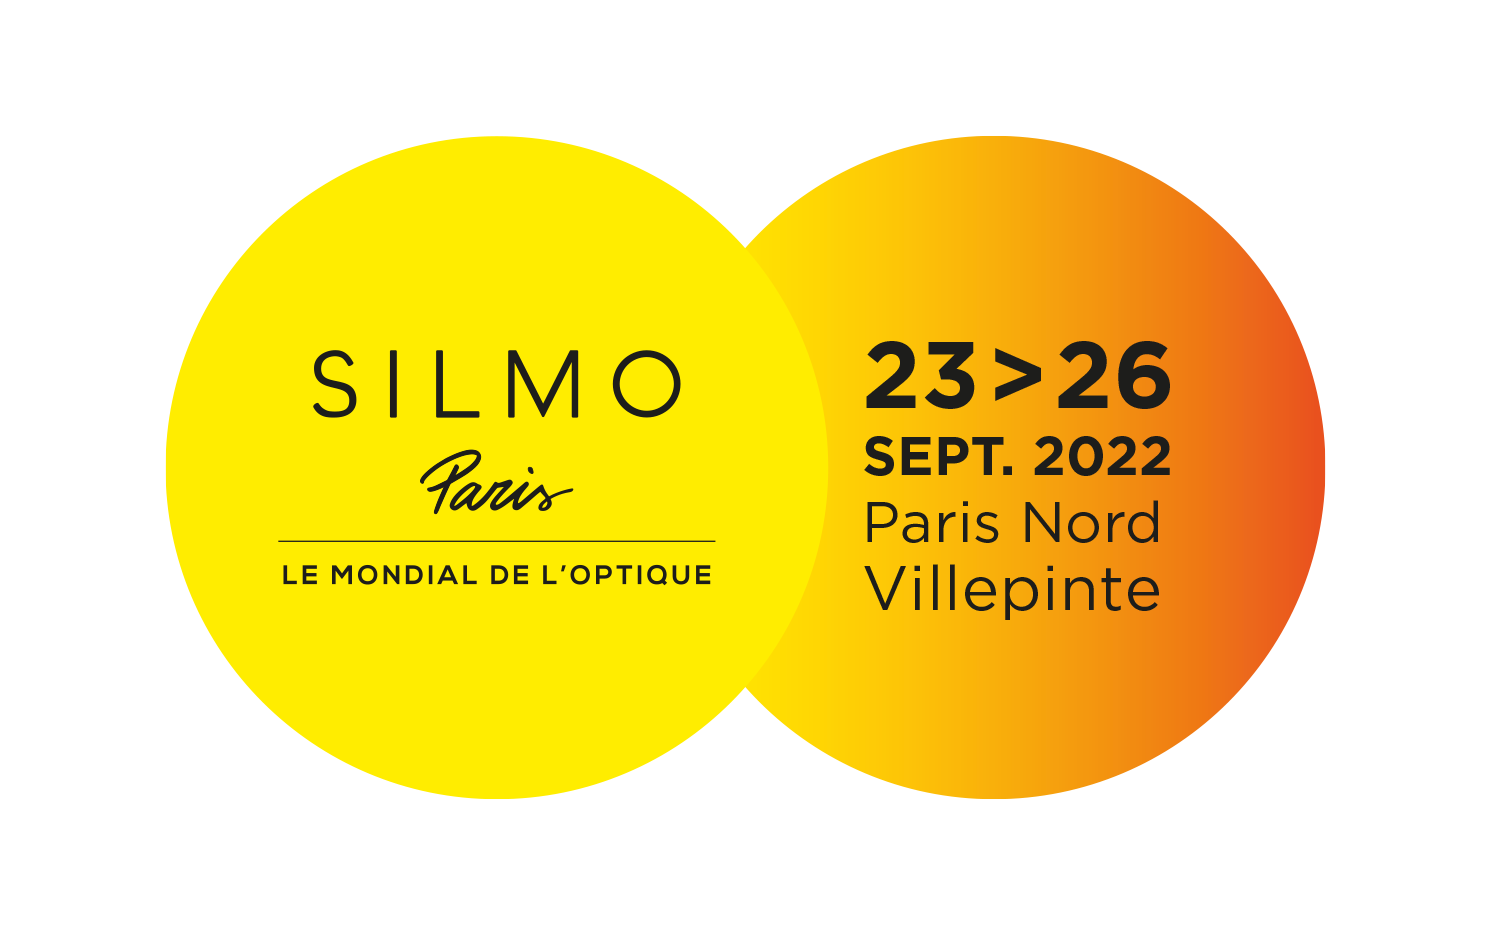 Silmo Paris 2022 - Le Mondial de l’Optique